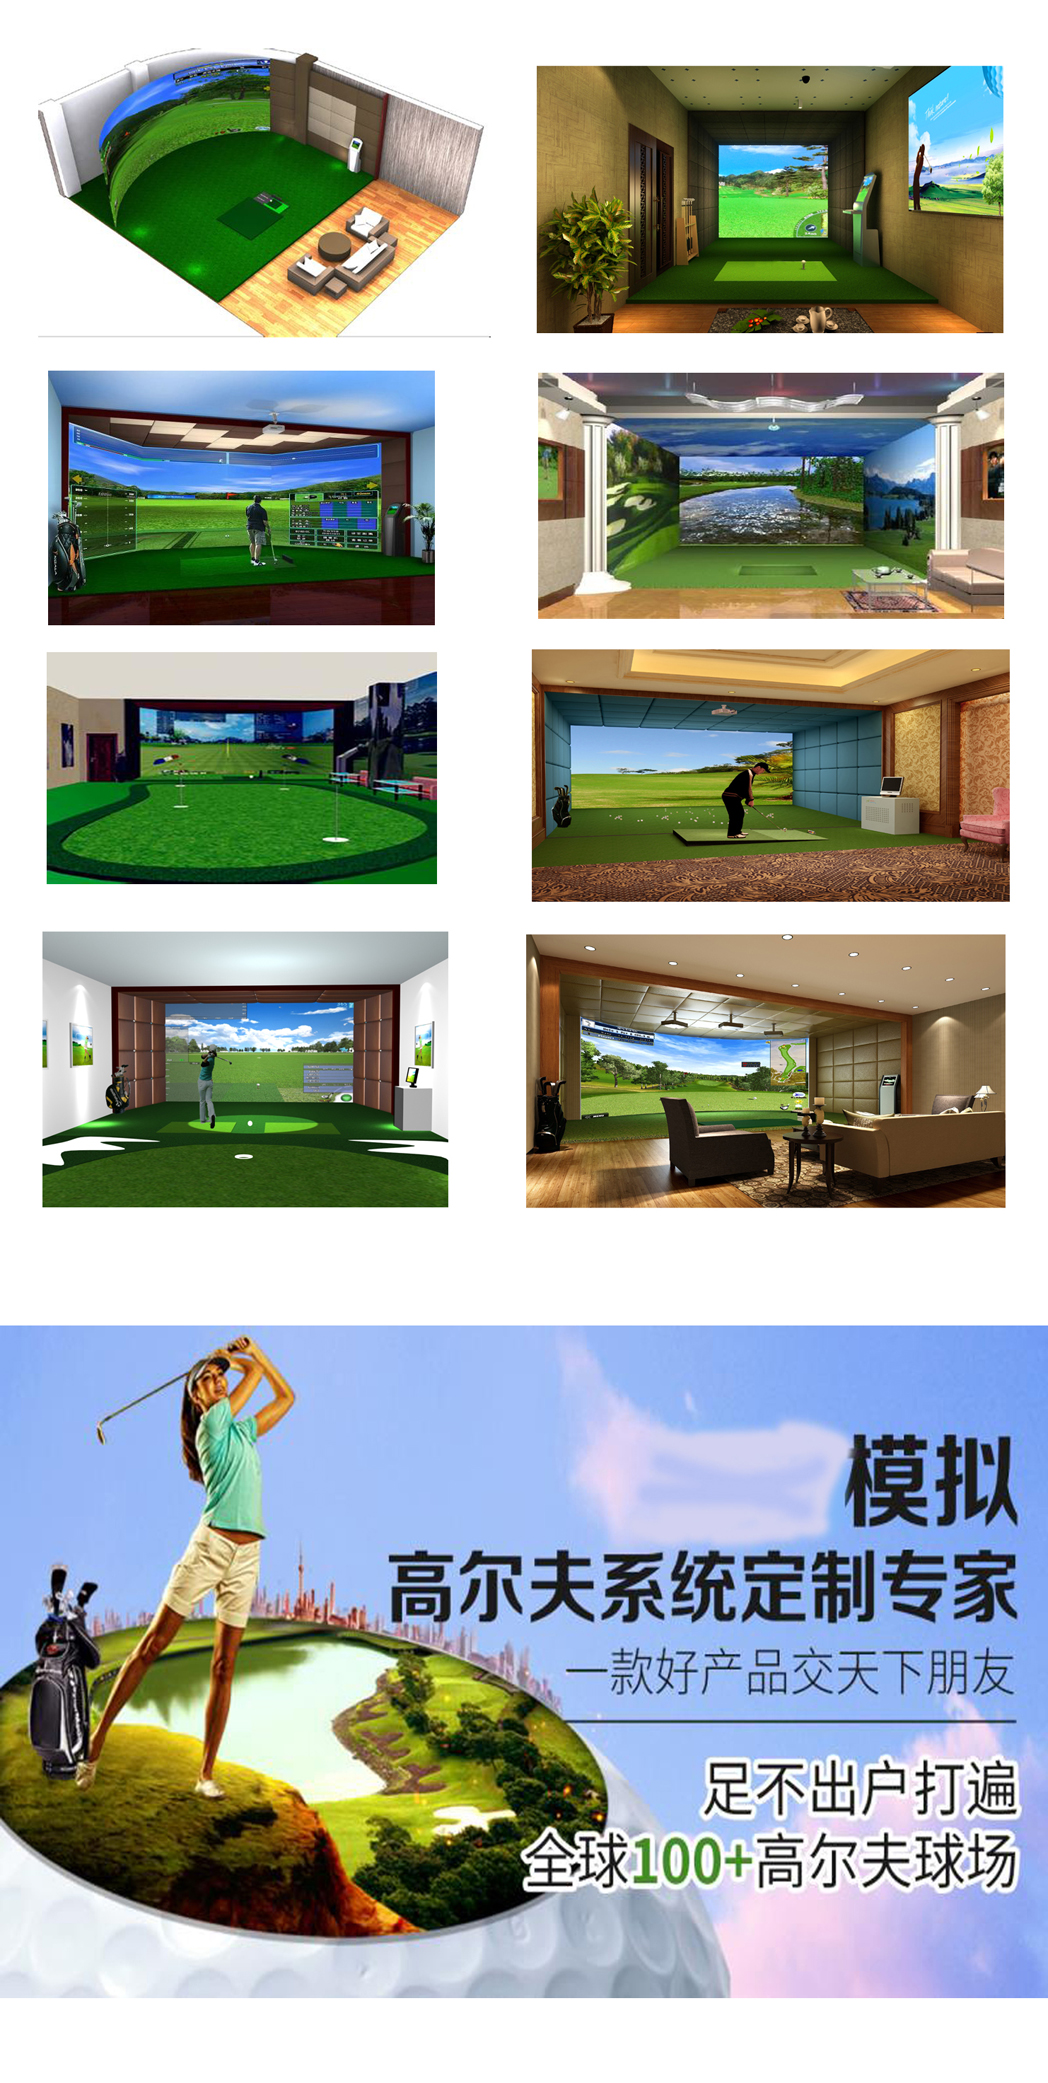 高尔夫模拟设备案例 1.jpg